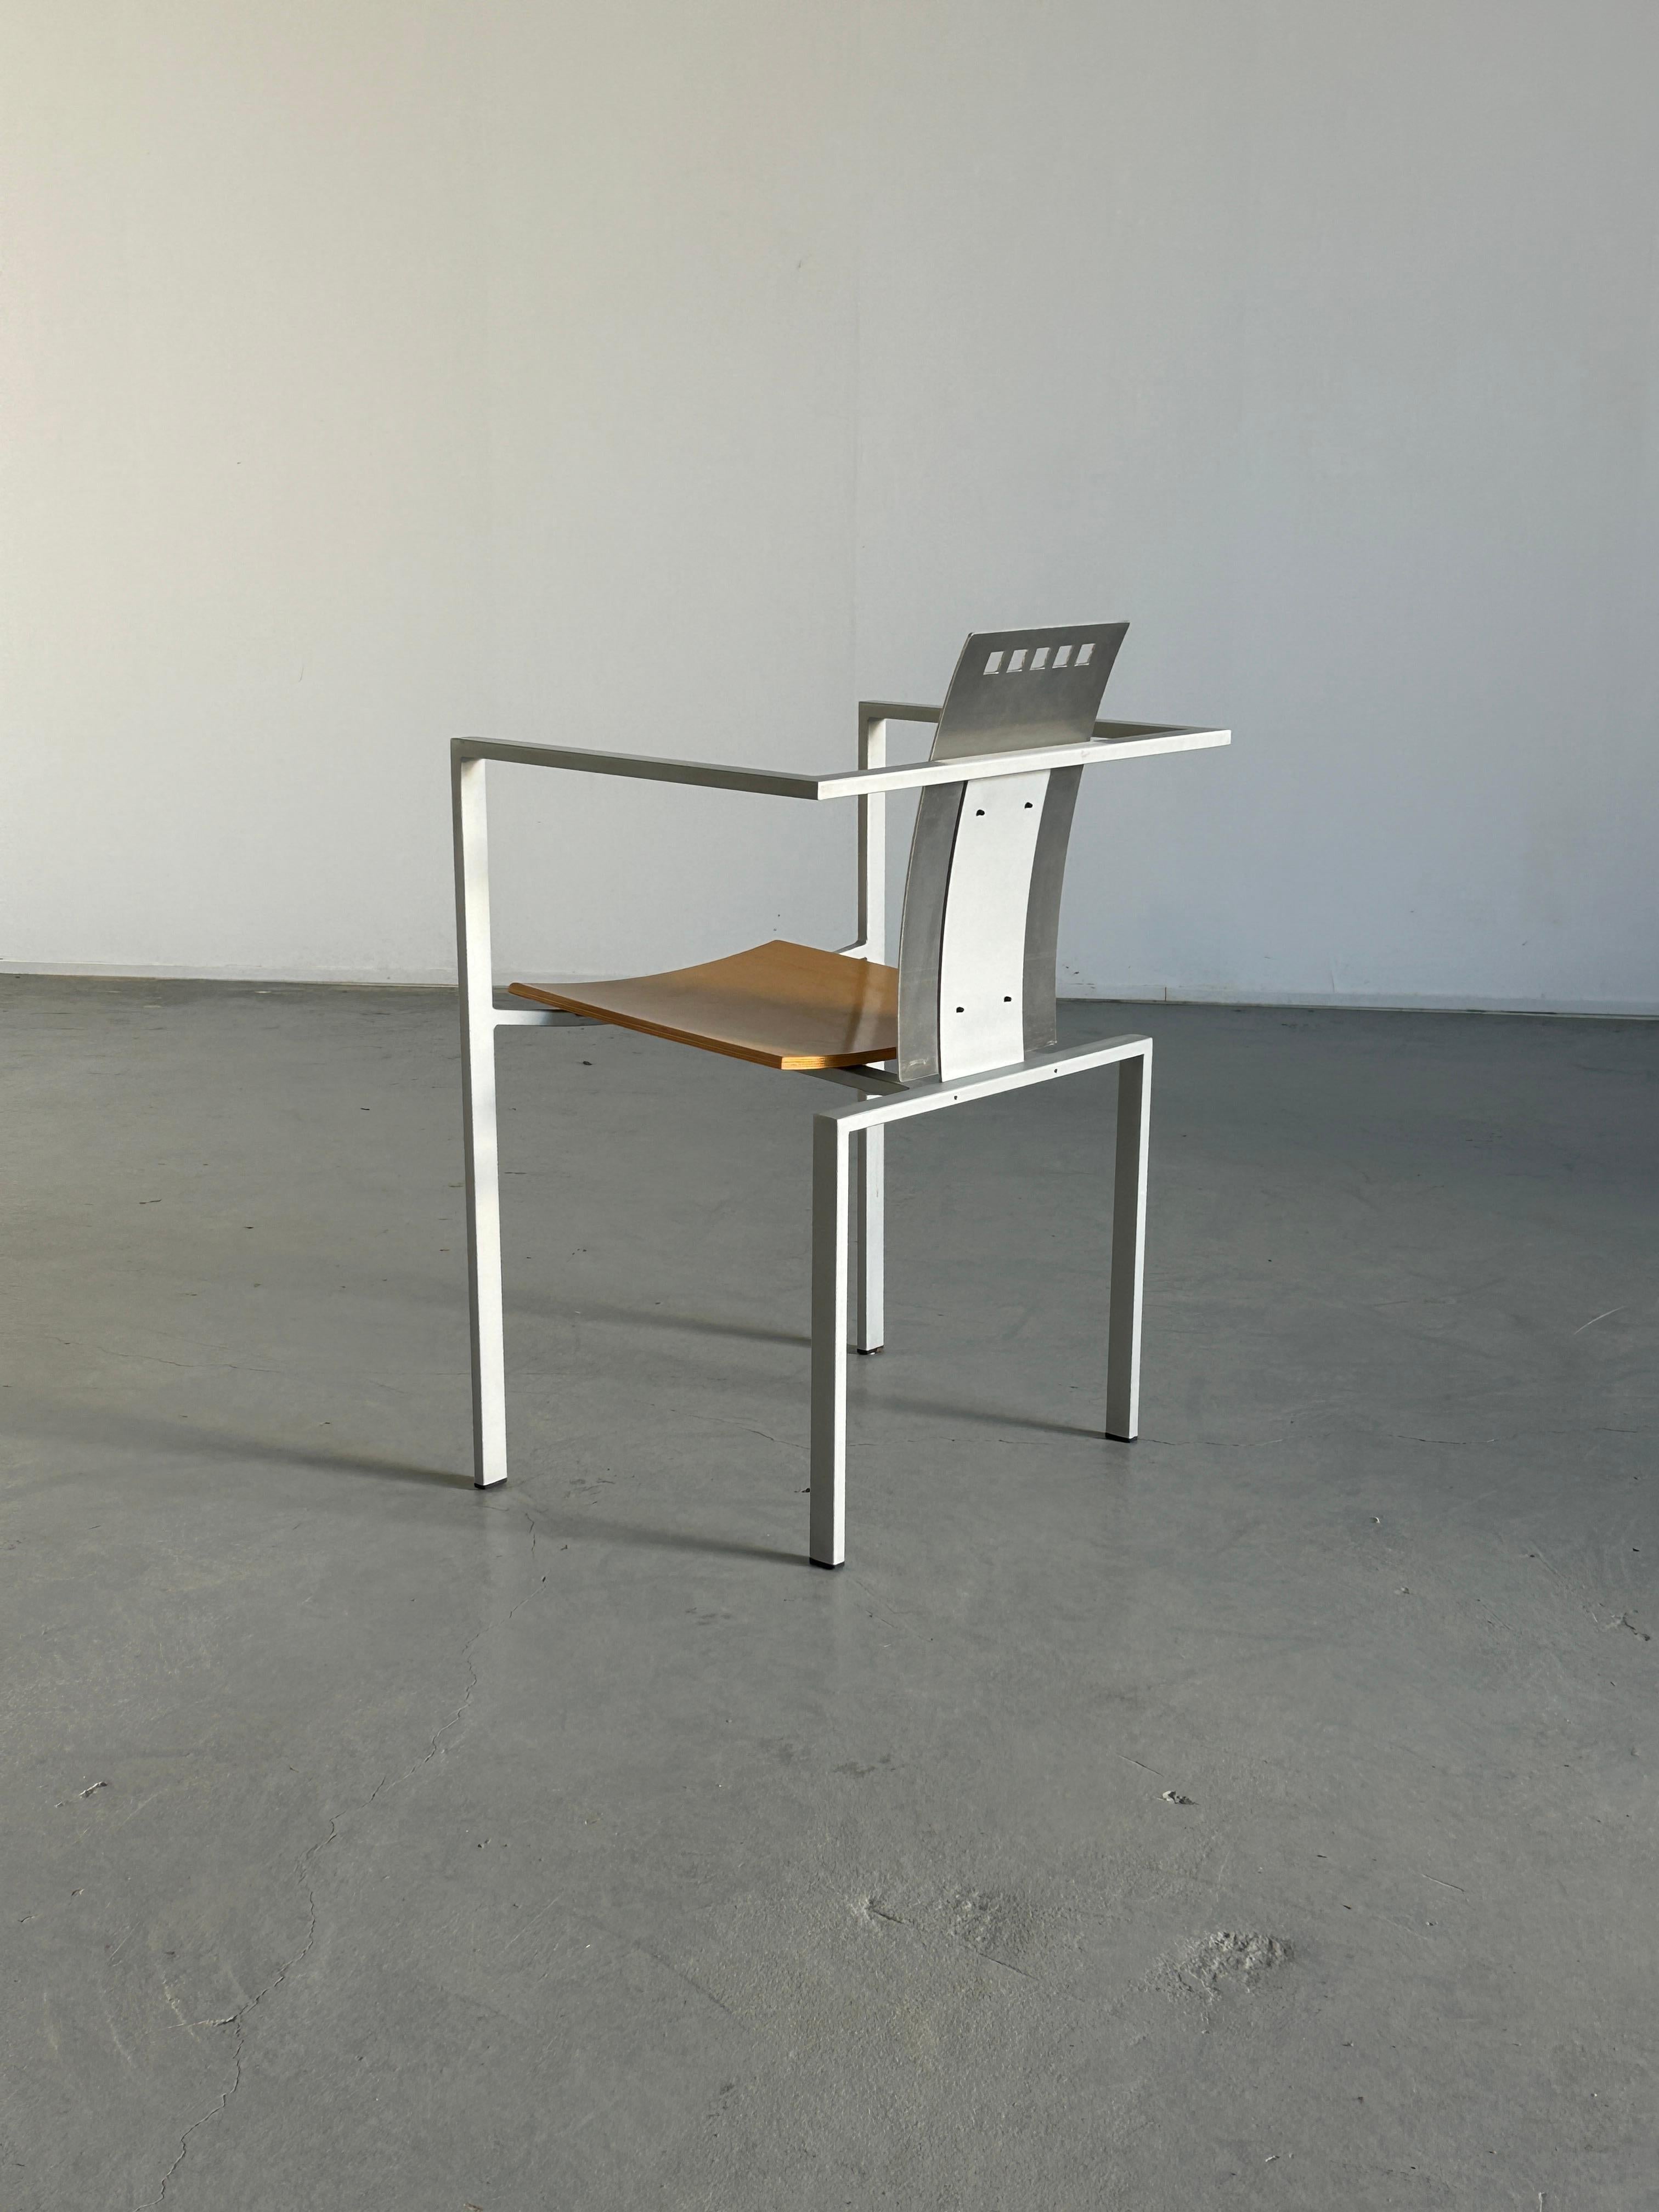 Metal Memphis Design Postmodern Chair by Karl Friedrich Förster for KFF, 1980s Germany